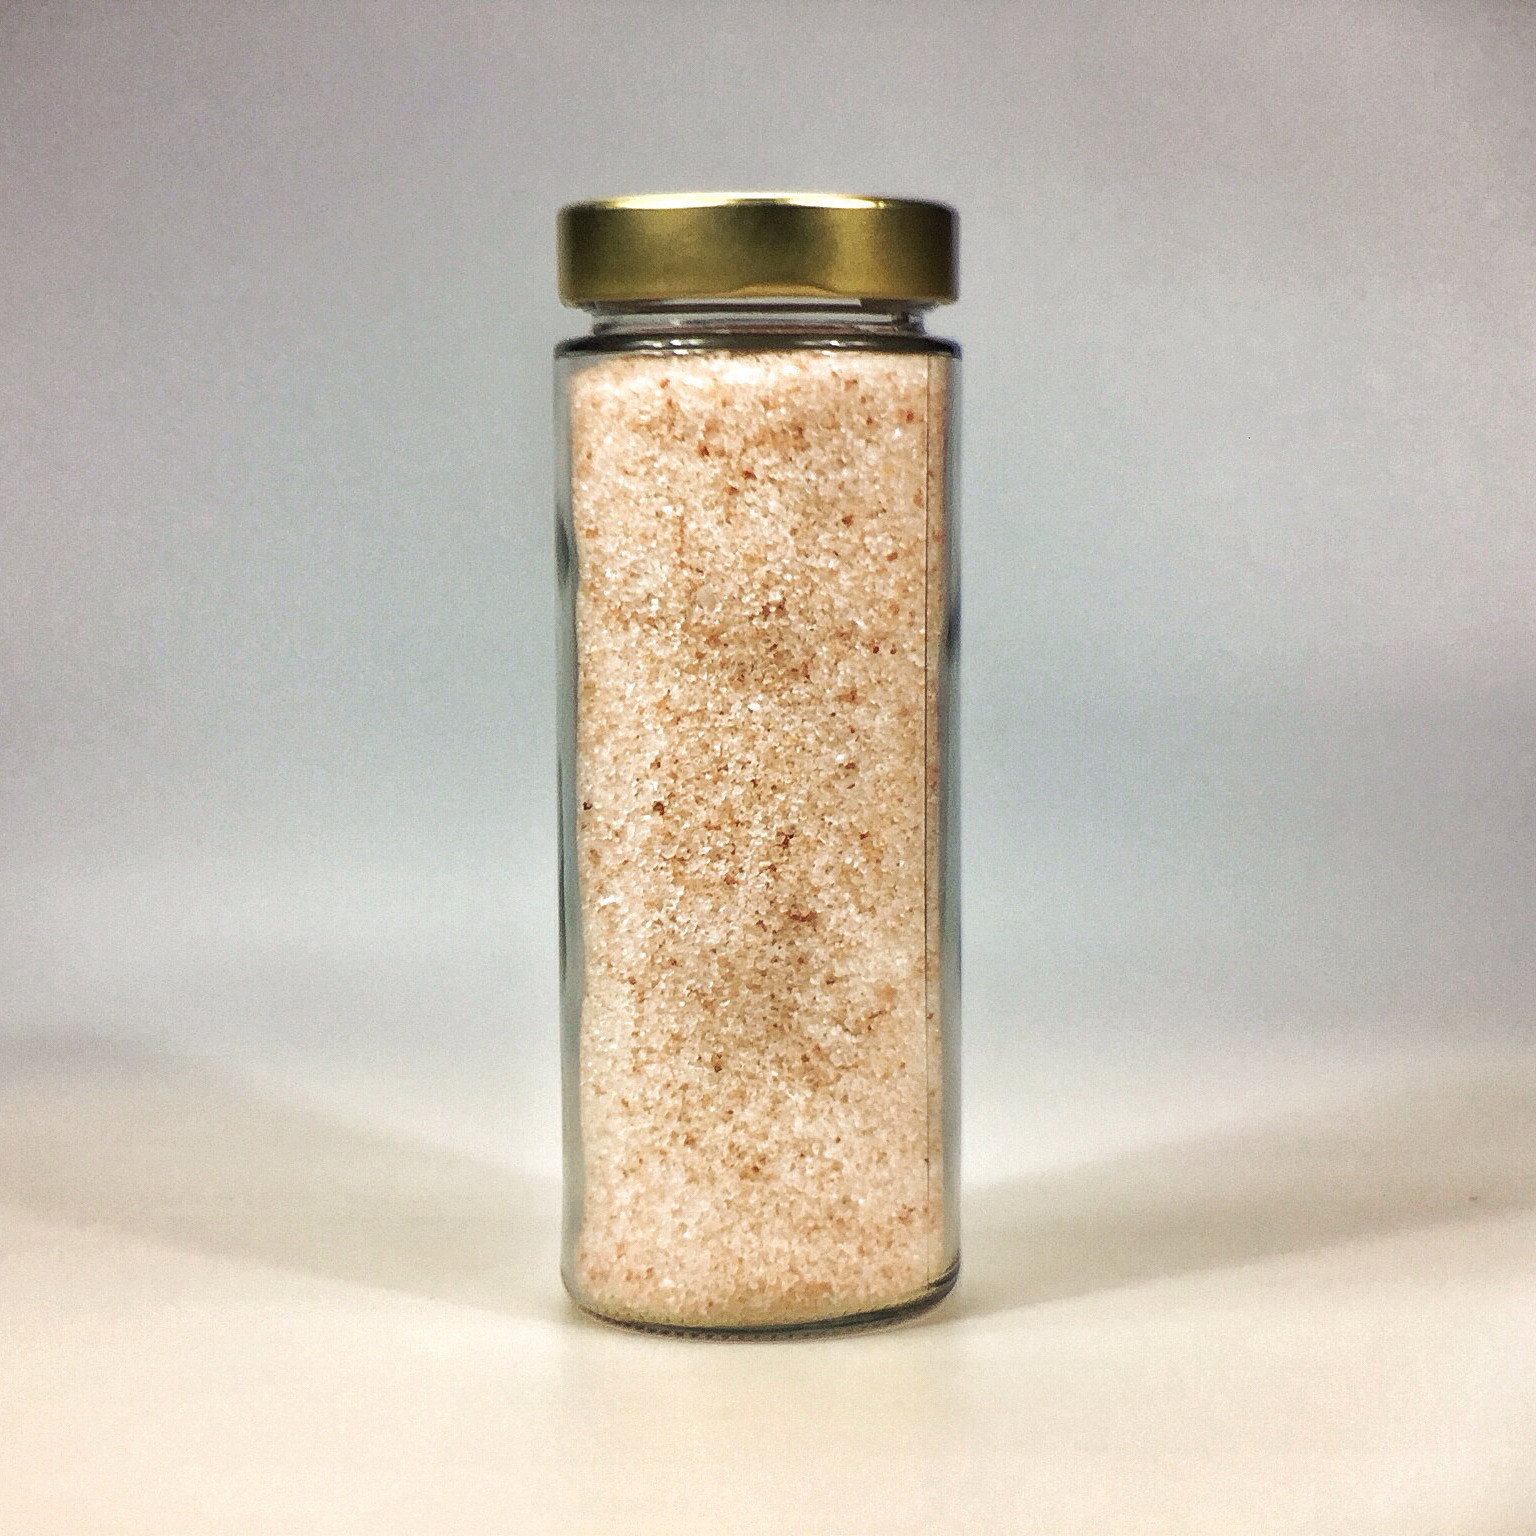 Himalaya Salz körnig gemahlen für Salzstreuer im grossen Glas mit Golddeckel